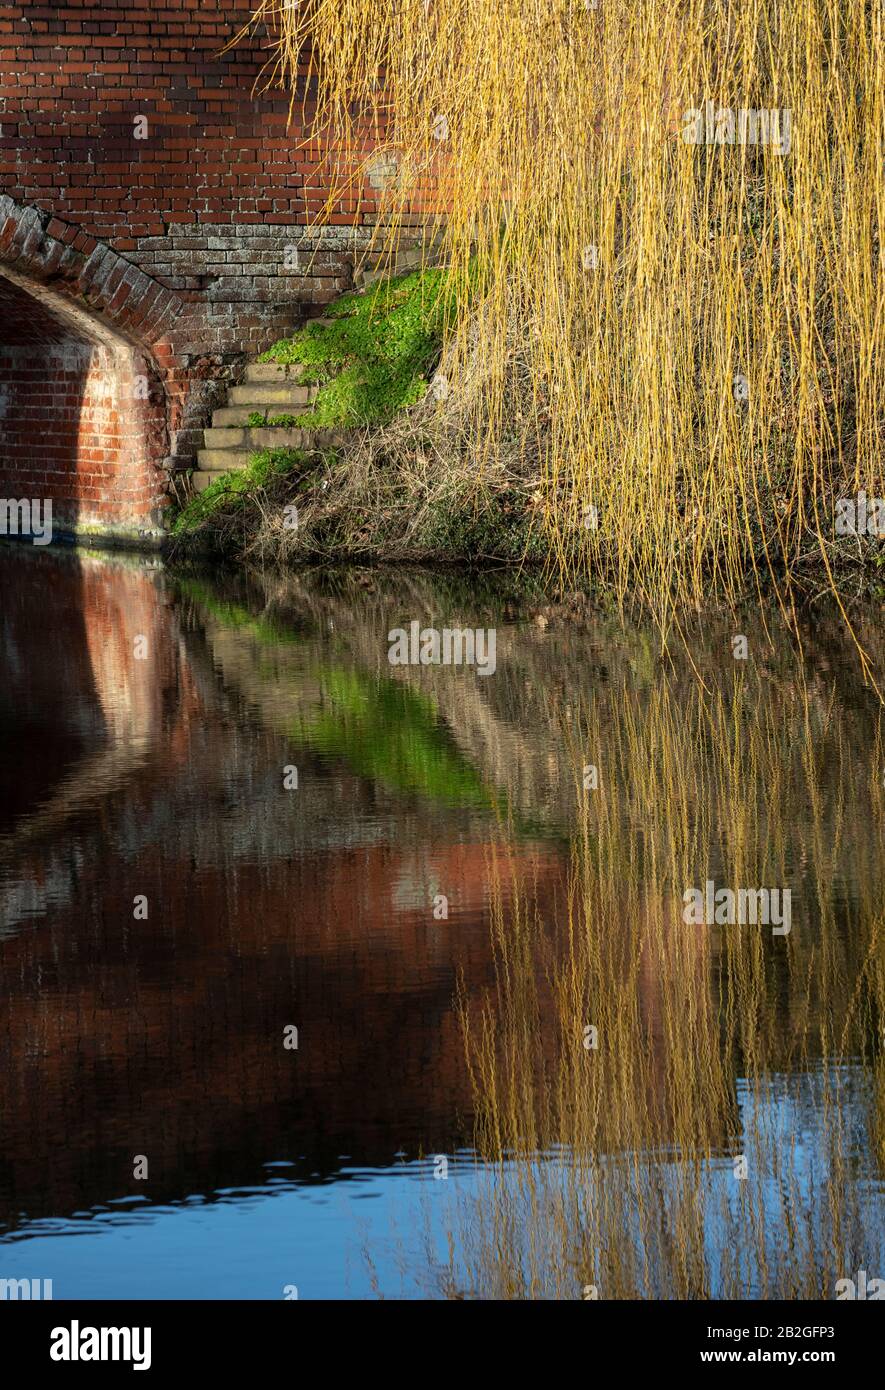 Foto Shropshire und Worcester Kanal ein britischer Wasserstraßenkanal in der Nähe von Tixall in Staffordshire Willow Bäume hängende Äste, die in der wa reflektieren Stockfoto